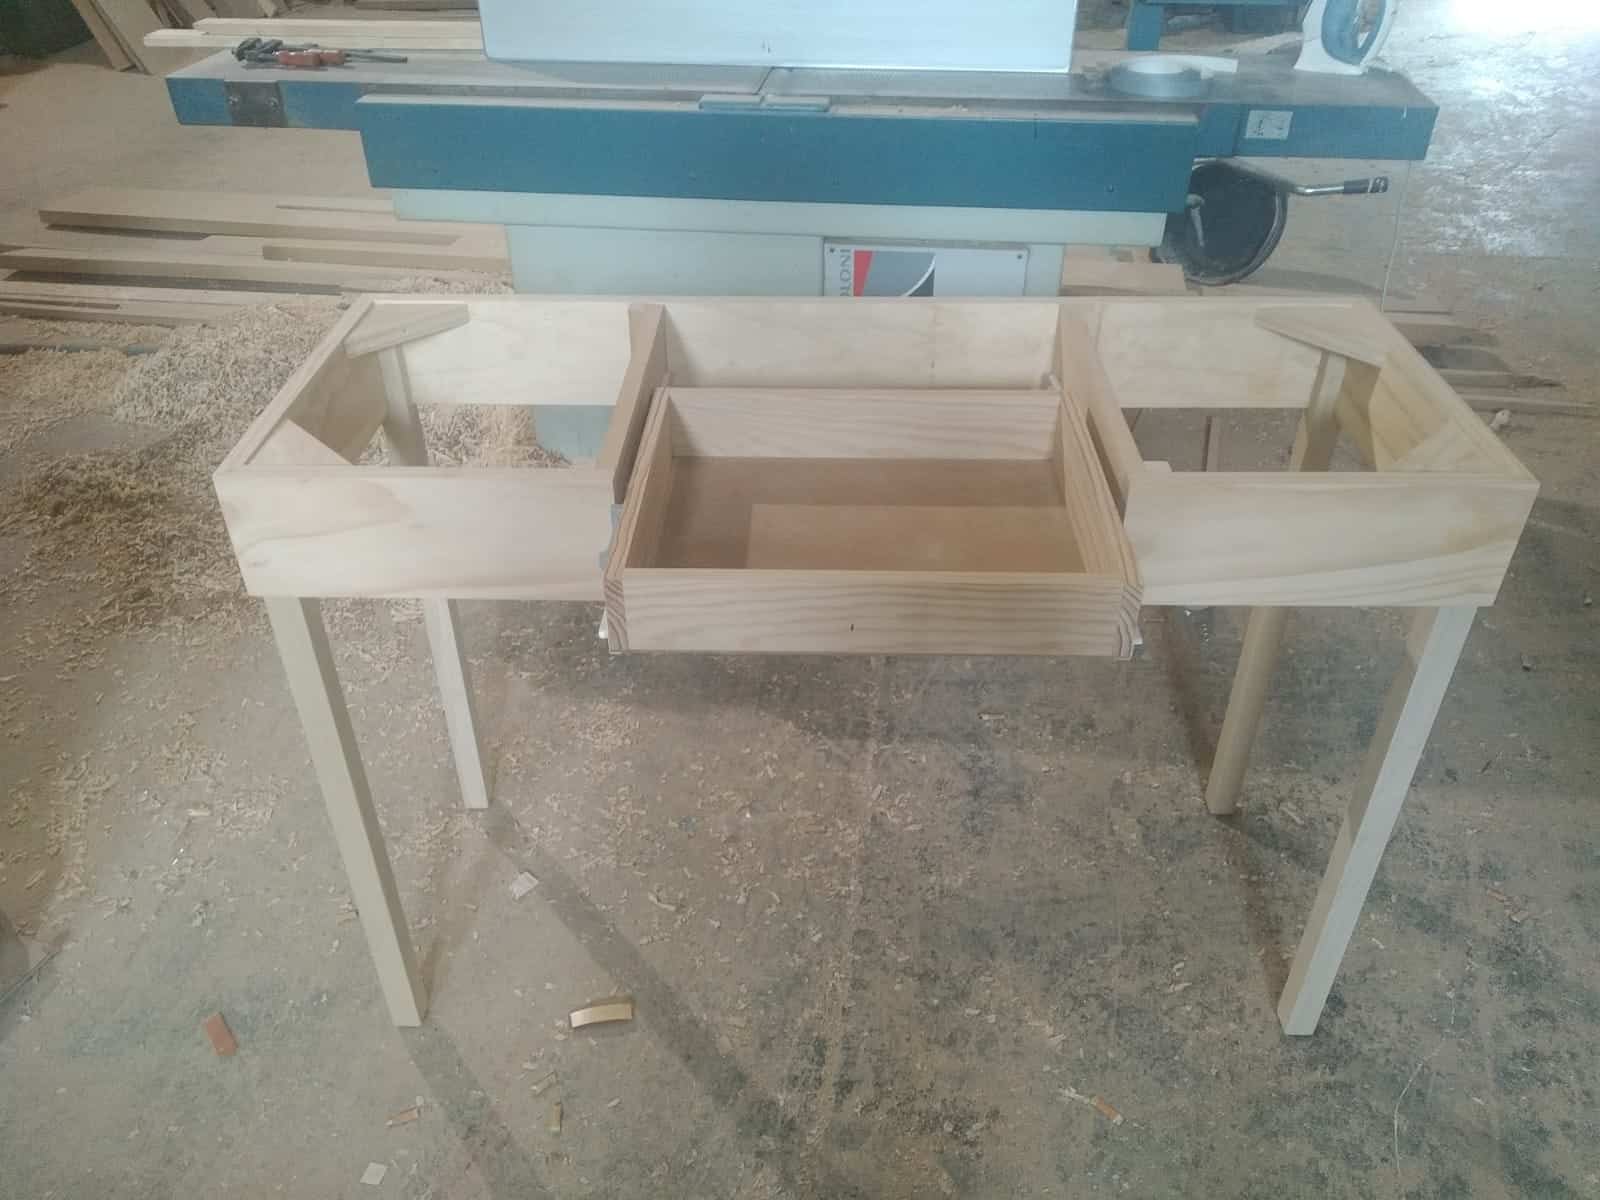 Trabajos carpintero: Construccion de una mesa a medida con cajón para cocina.